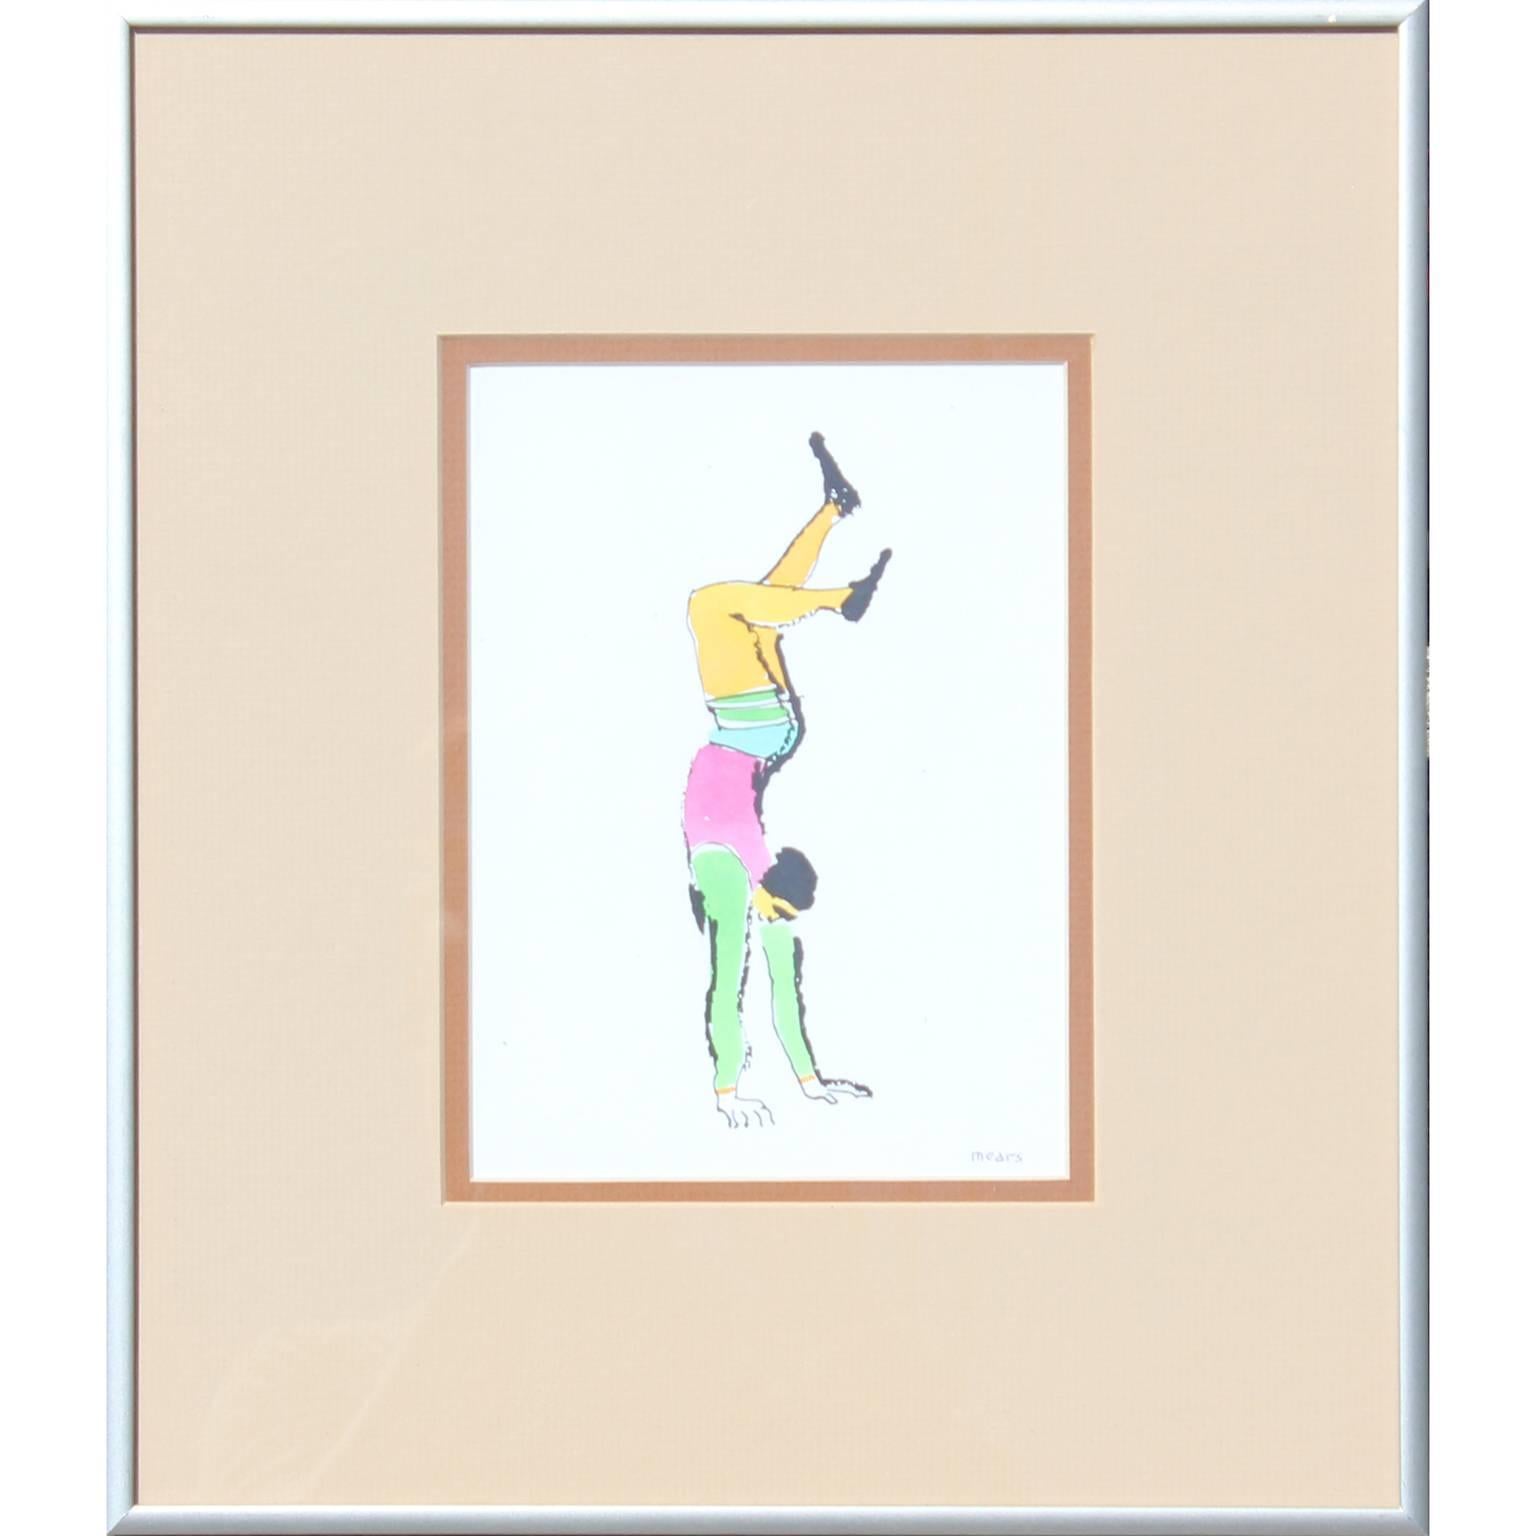 Herbert Mears Figurative Art - Handstand